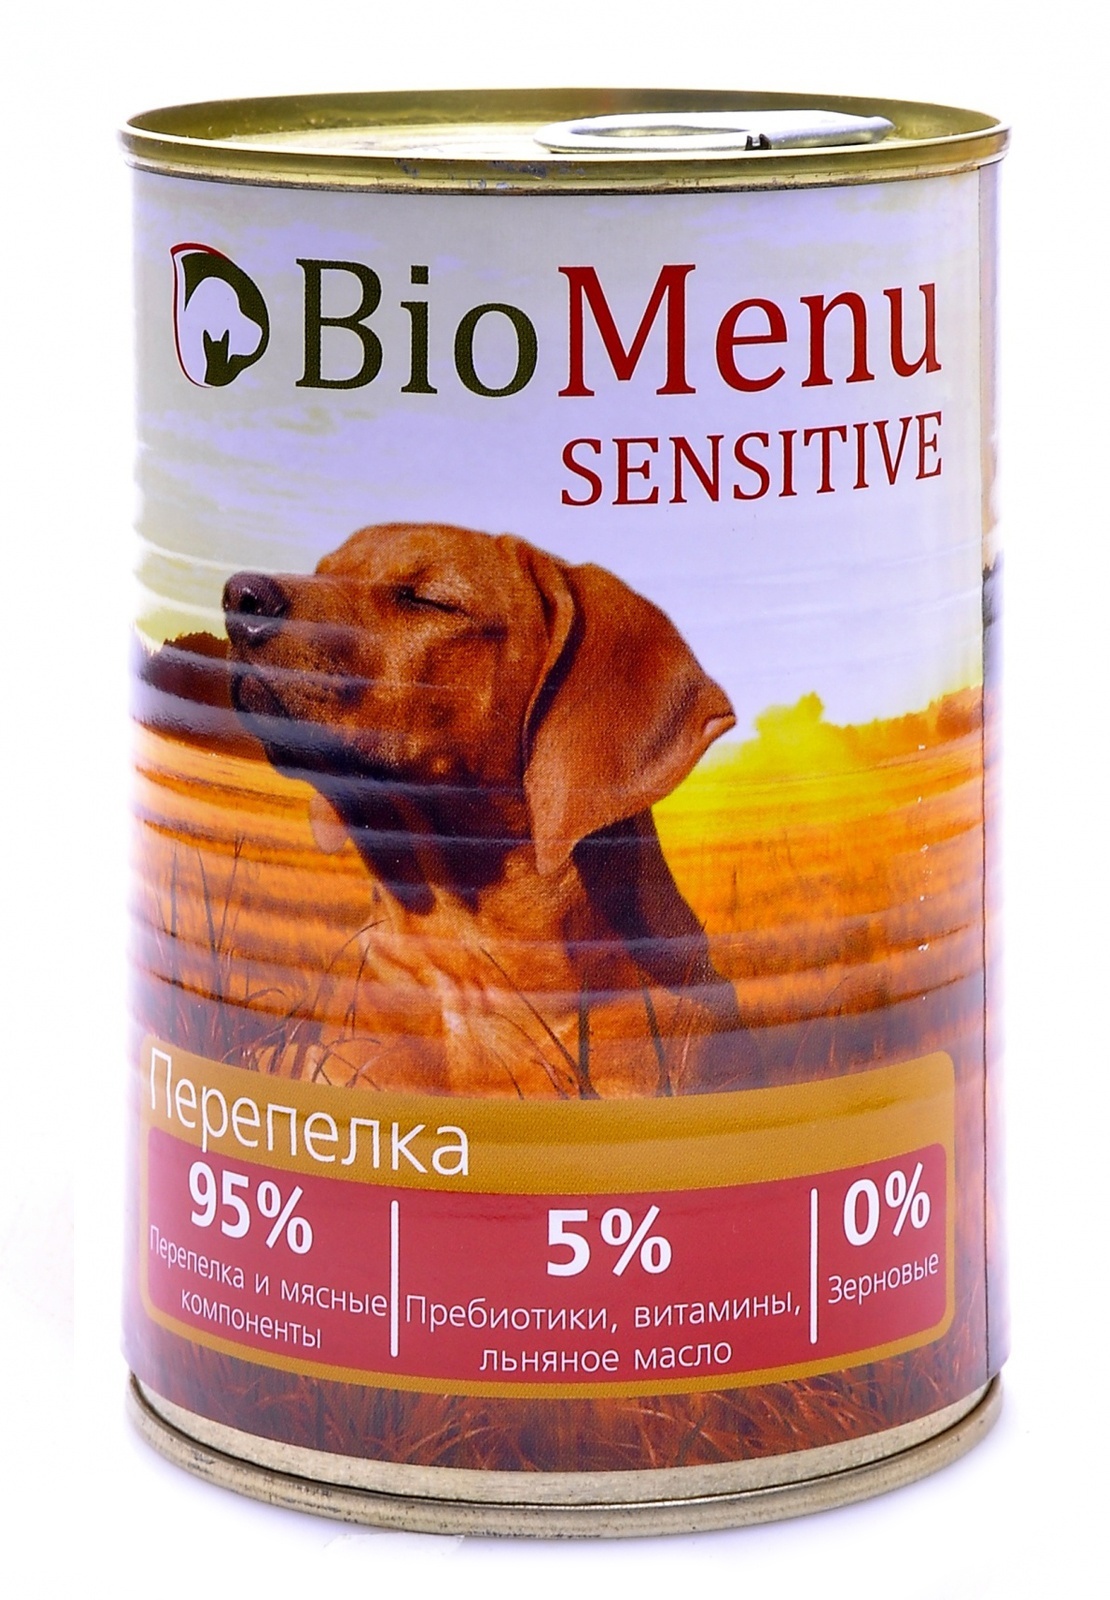 BioMenu BioMenu гипоаллергенные консервы для собак перепелка (100 г) biomenu biomenu гипоаллергенные консервы для собак индейка и кролик 100 г